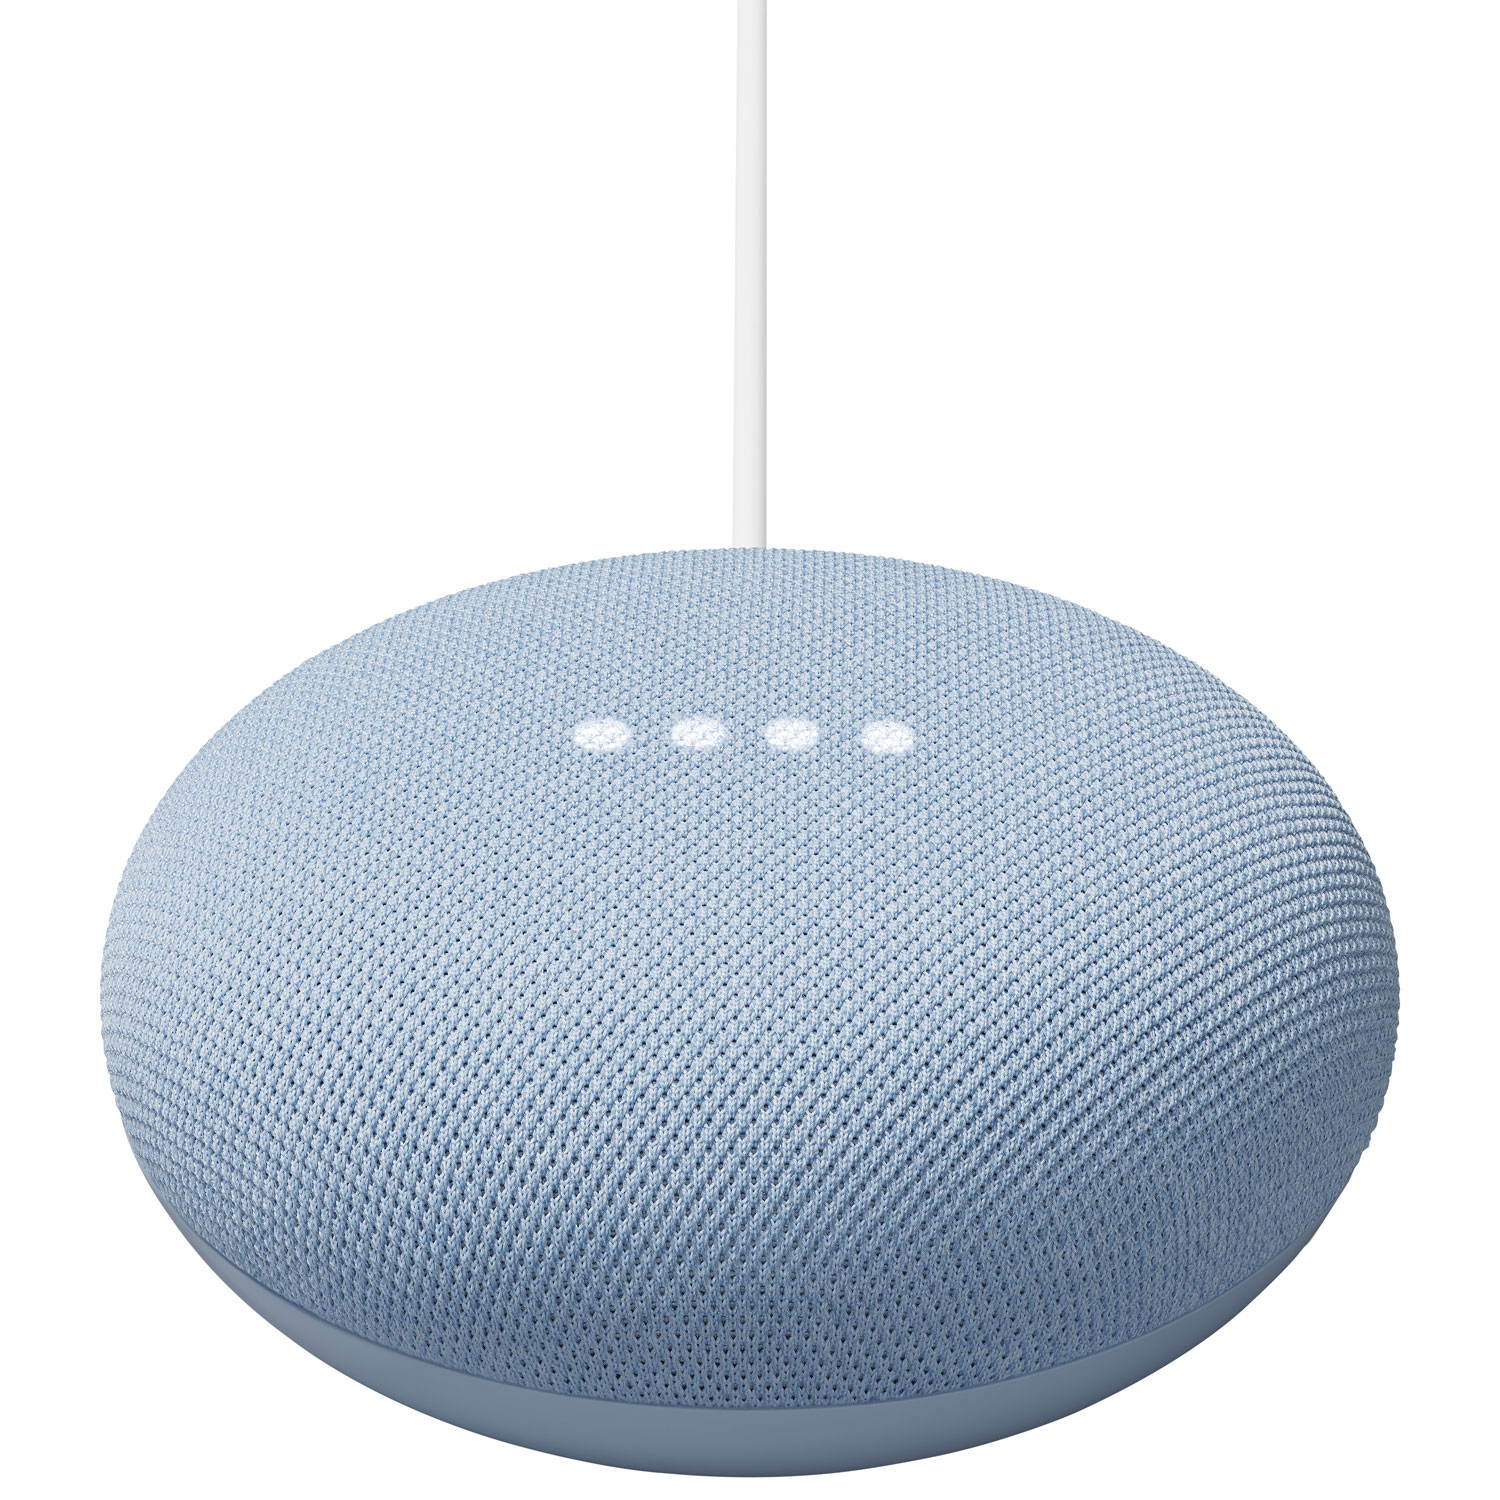 Smart Speaker - Nest Mini